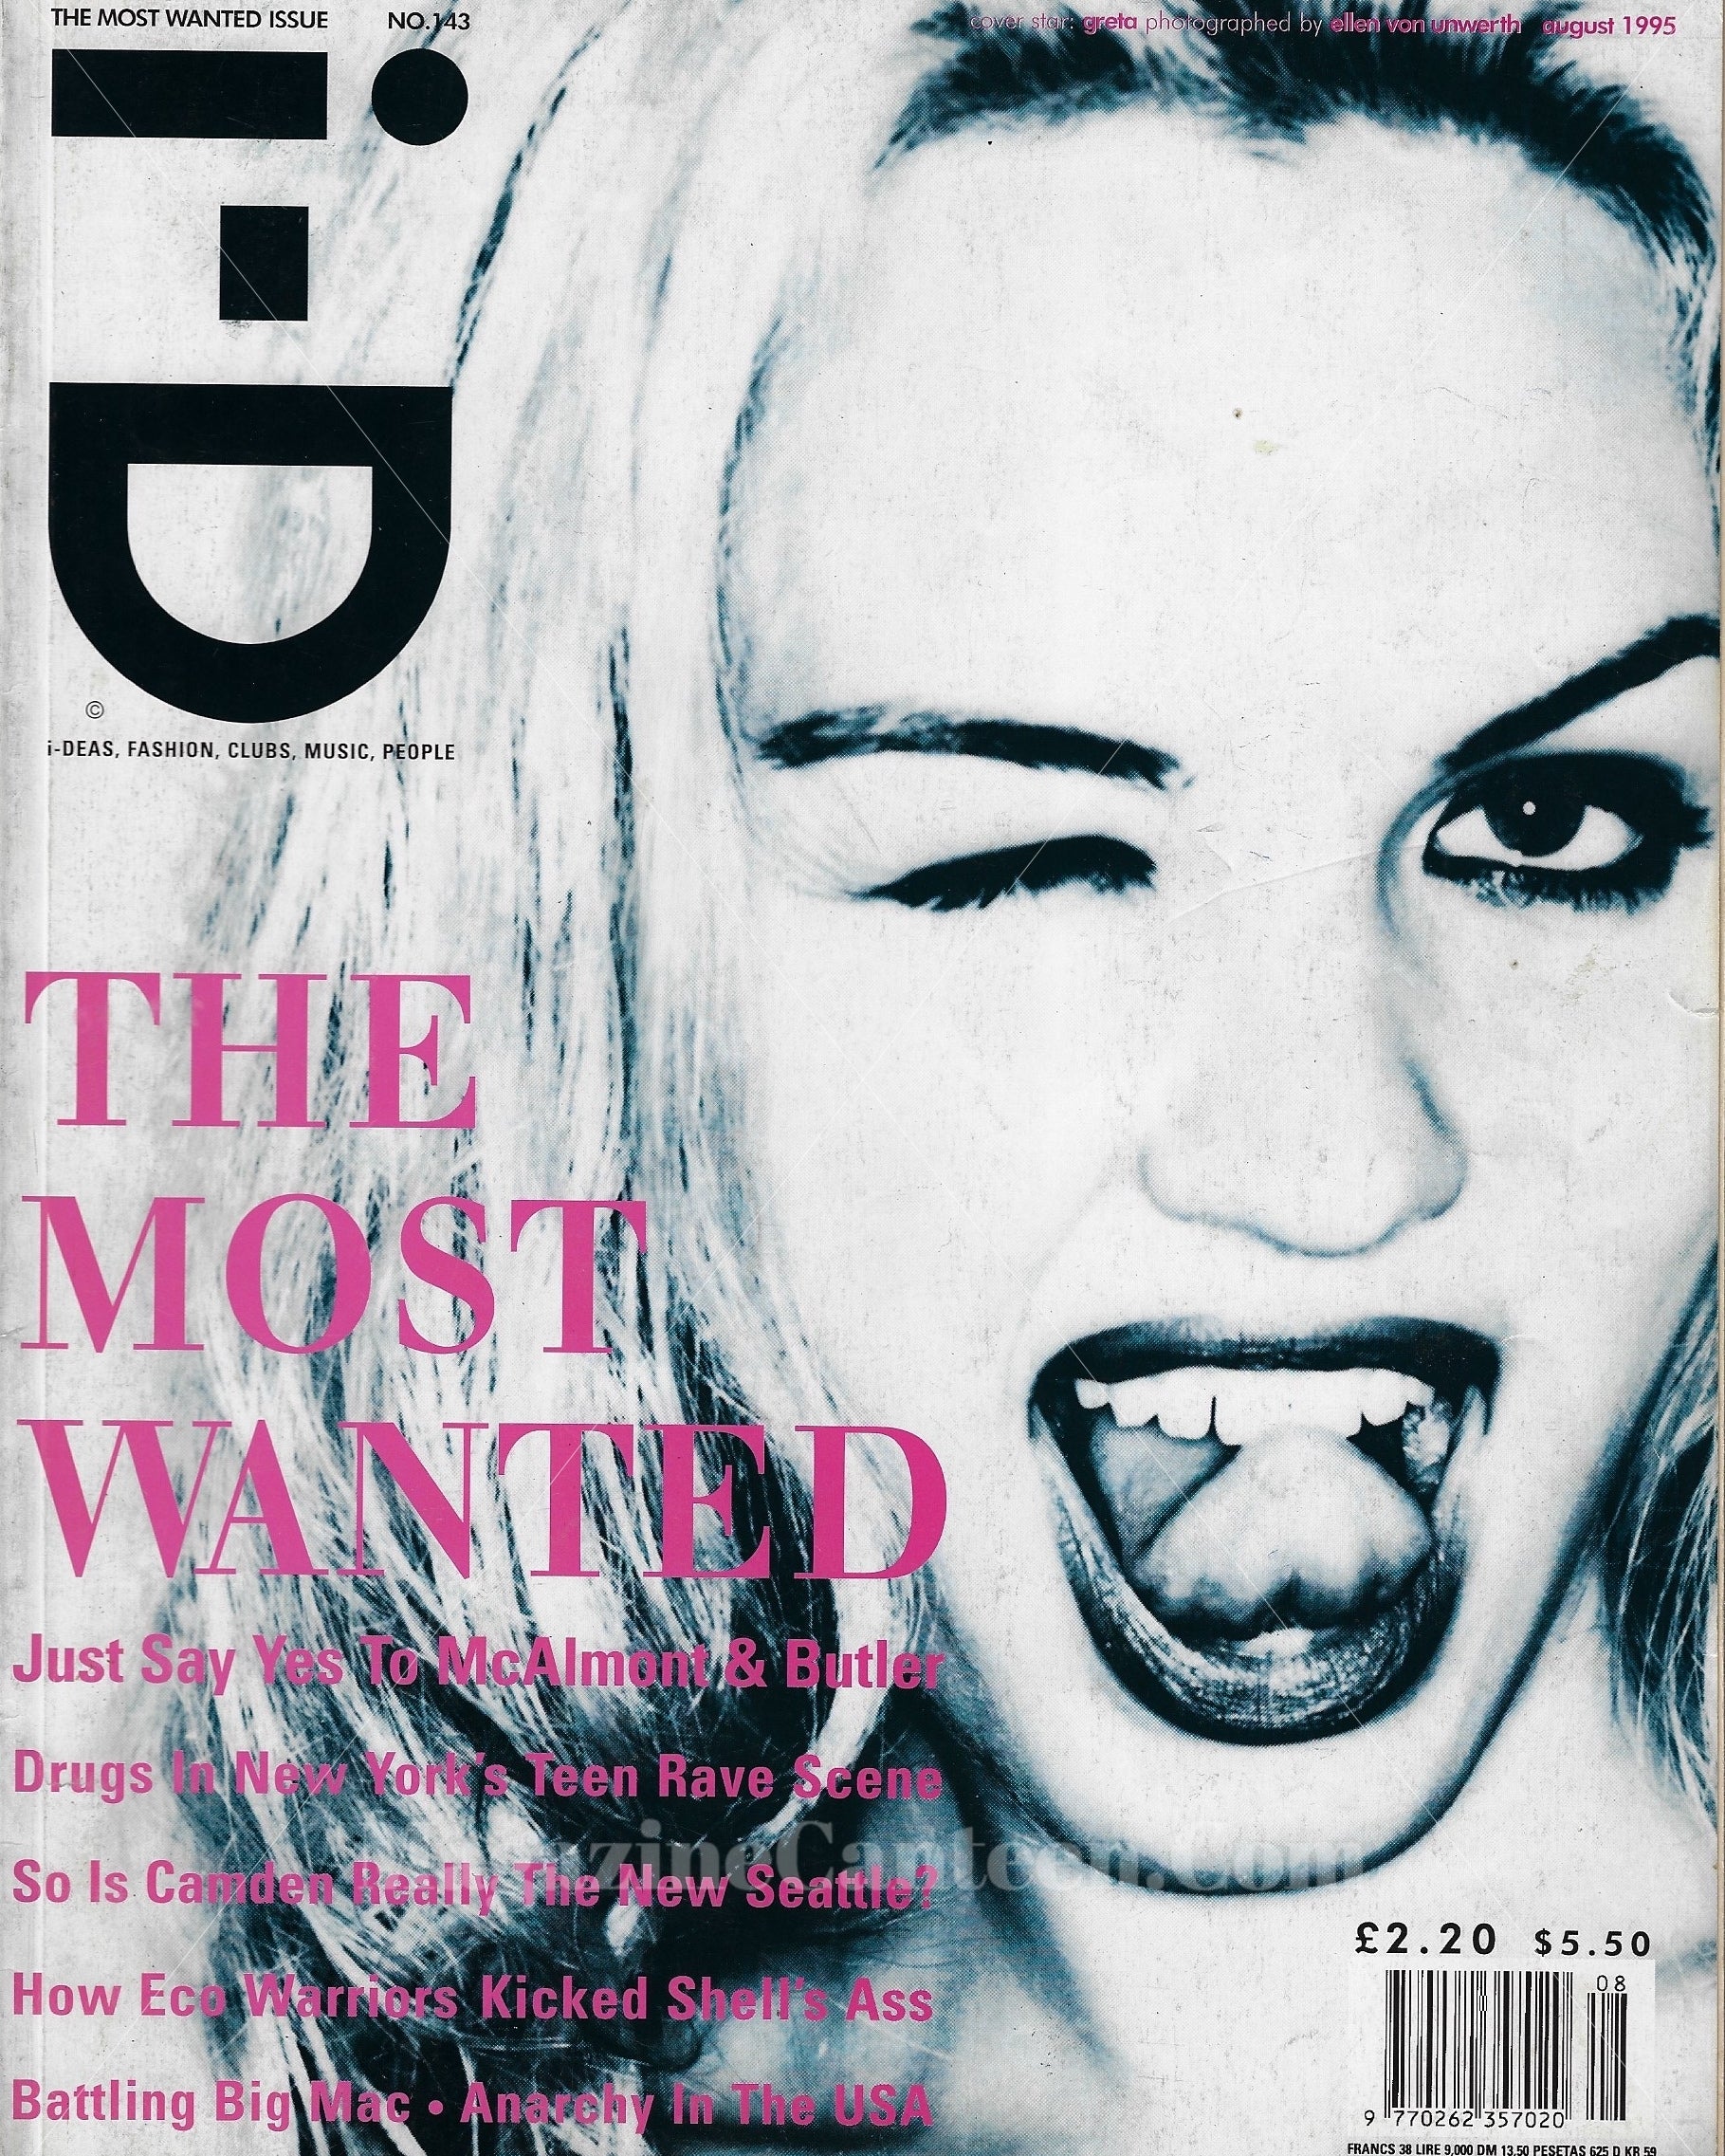 I-D Magazine 143 - Ellen Von Unwerth 1995